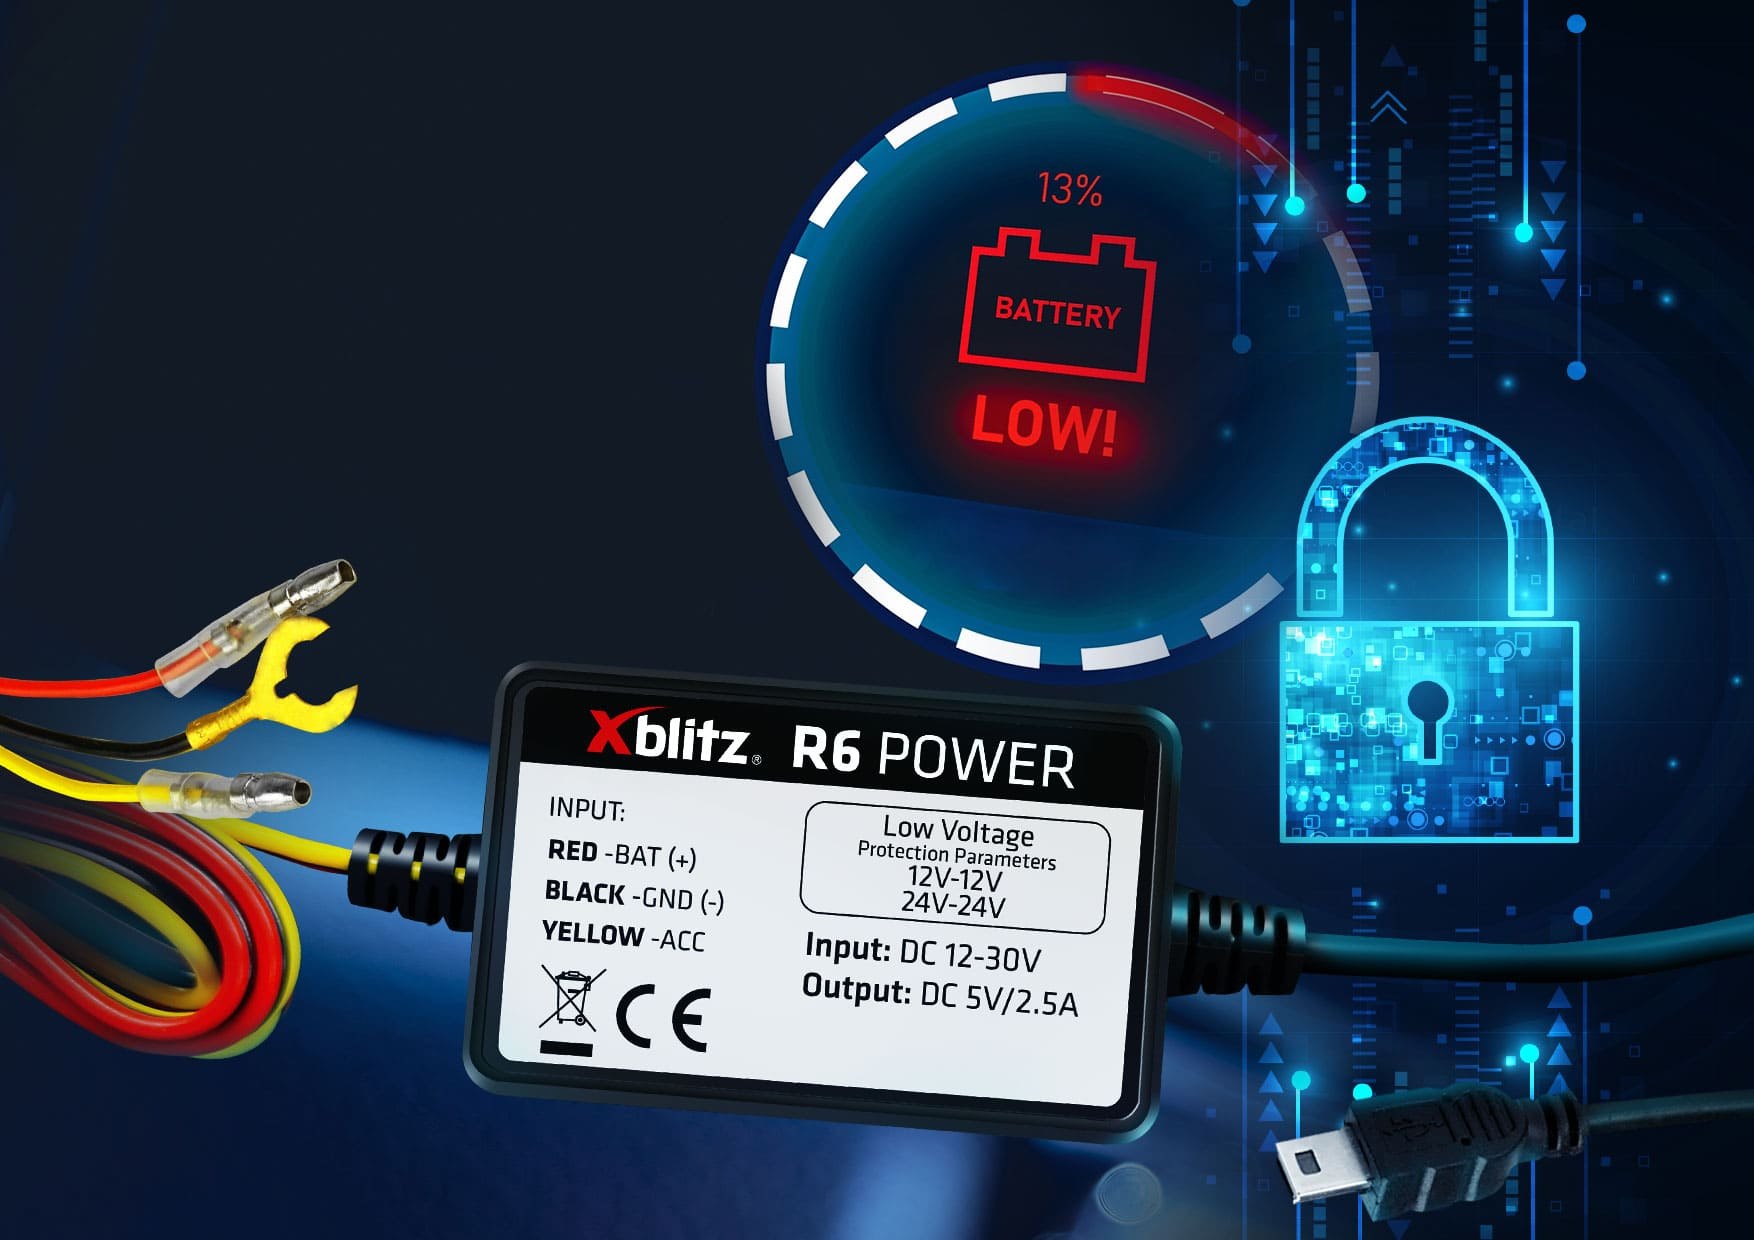 Xblitz R6 Power